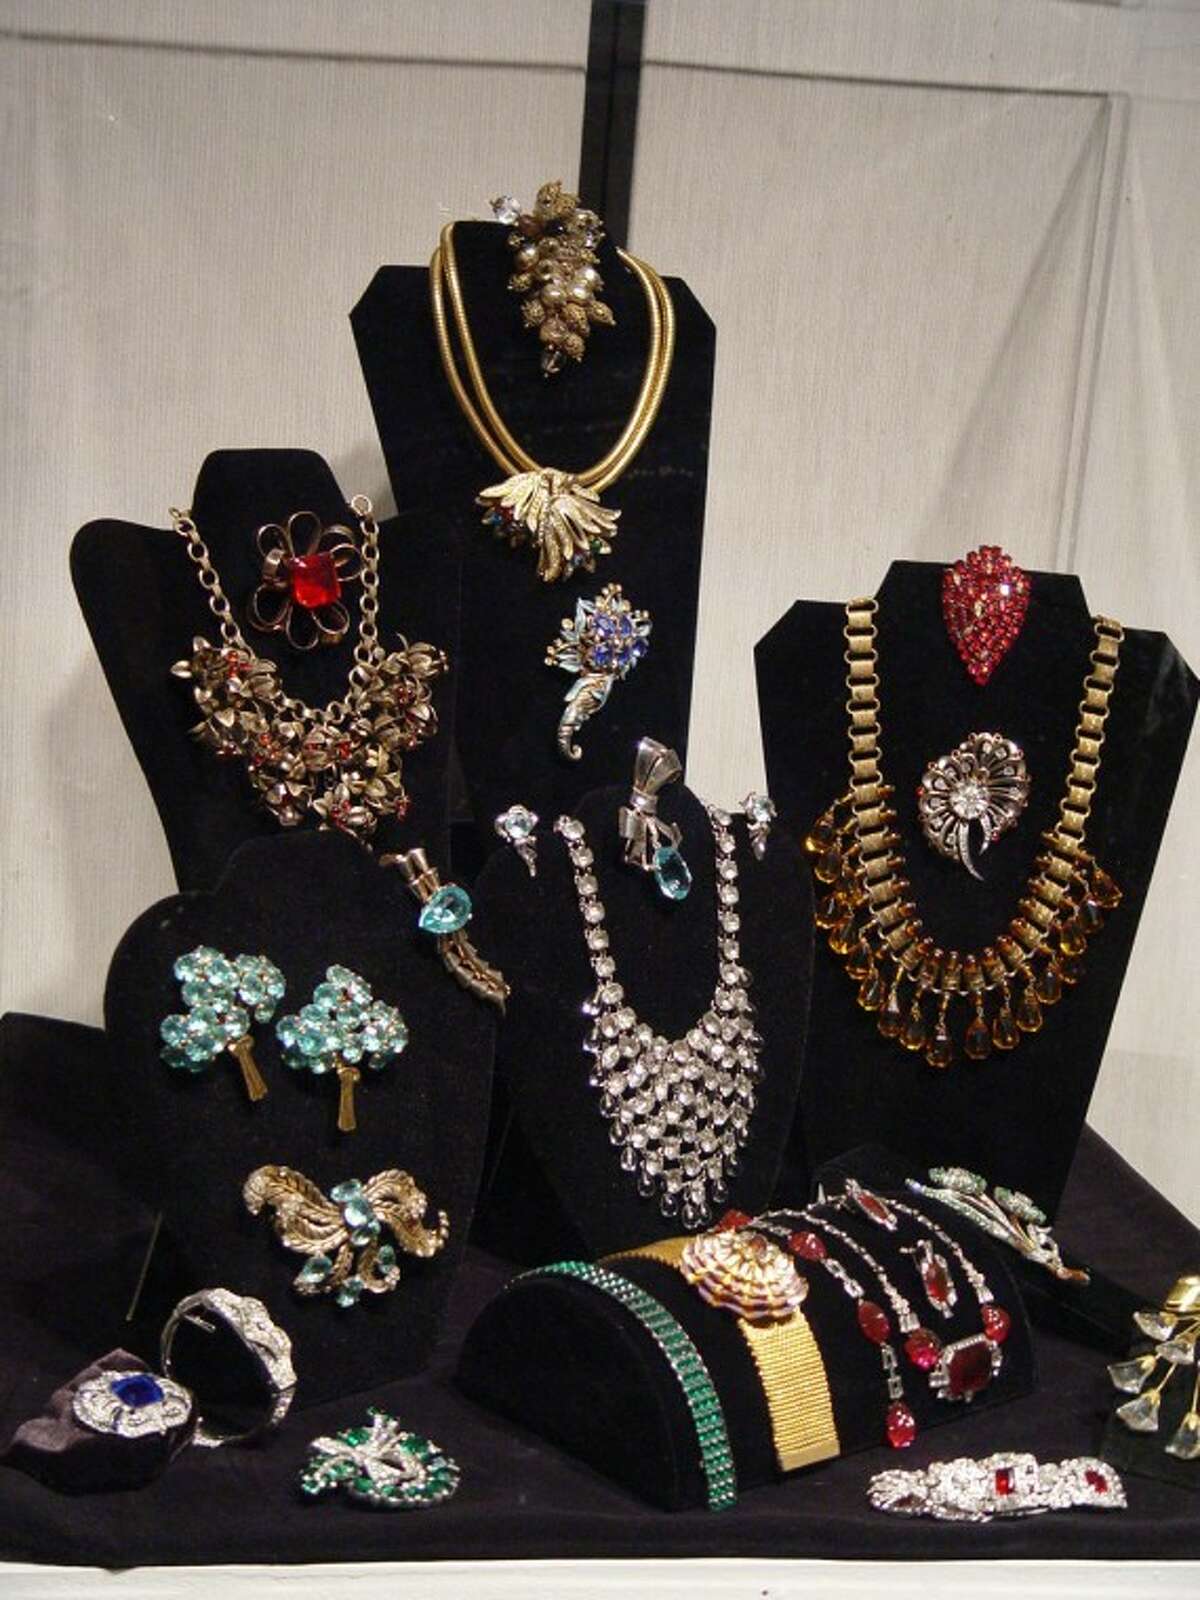 Vintage costume jewelry on display at Ellen Noel